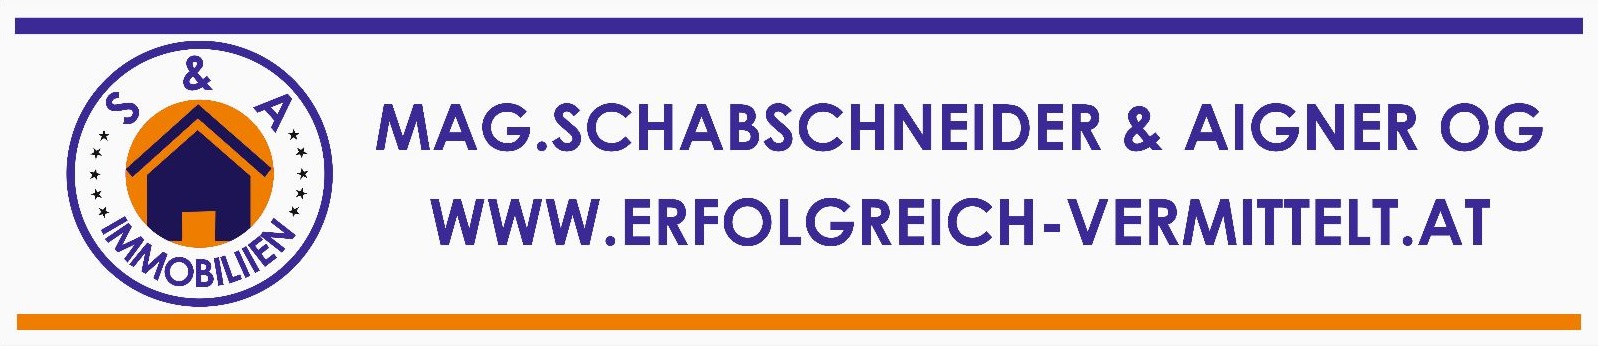 Schabschneider Aigner logo